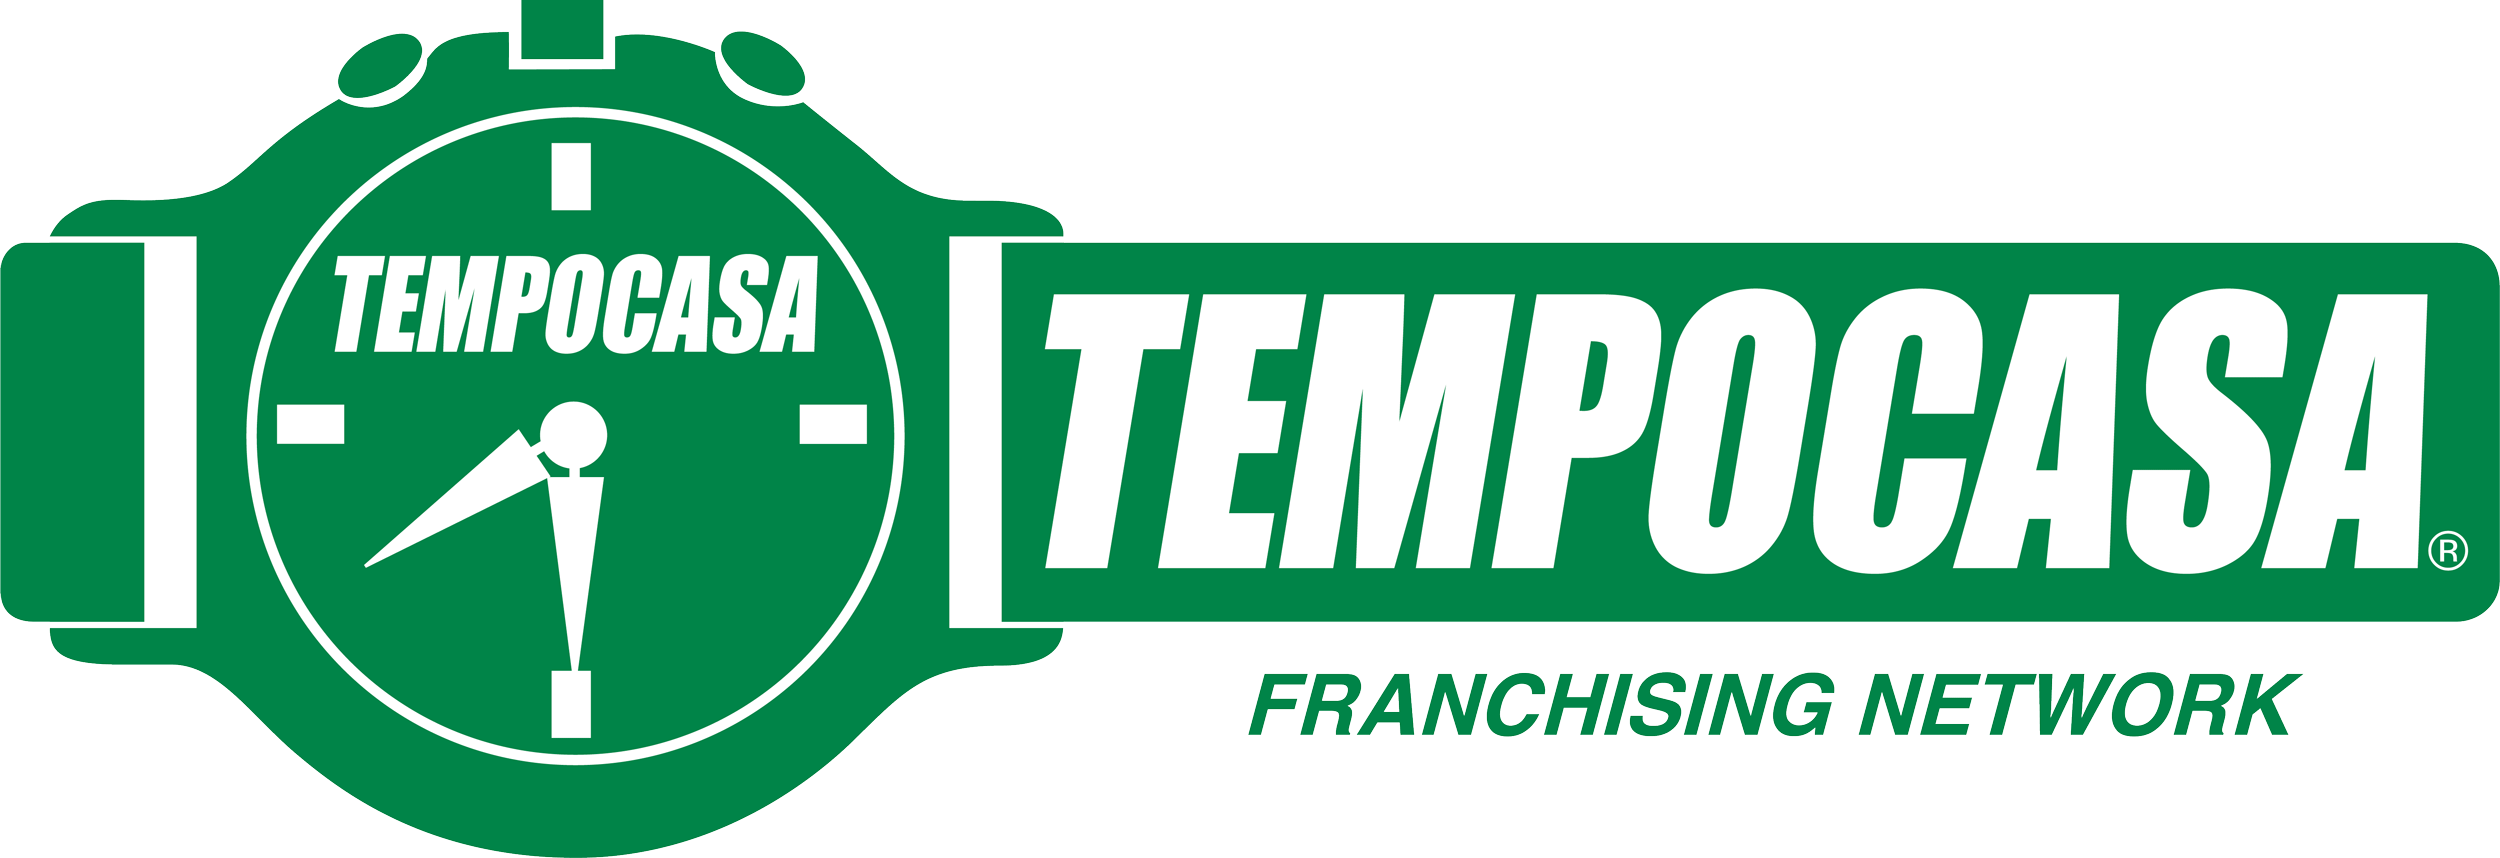 TempoAffitti Milano Garibaldi - Tempocasa